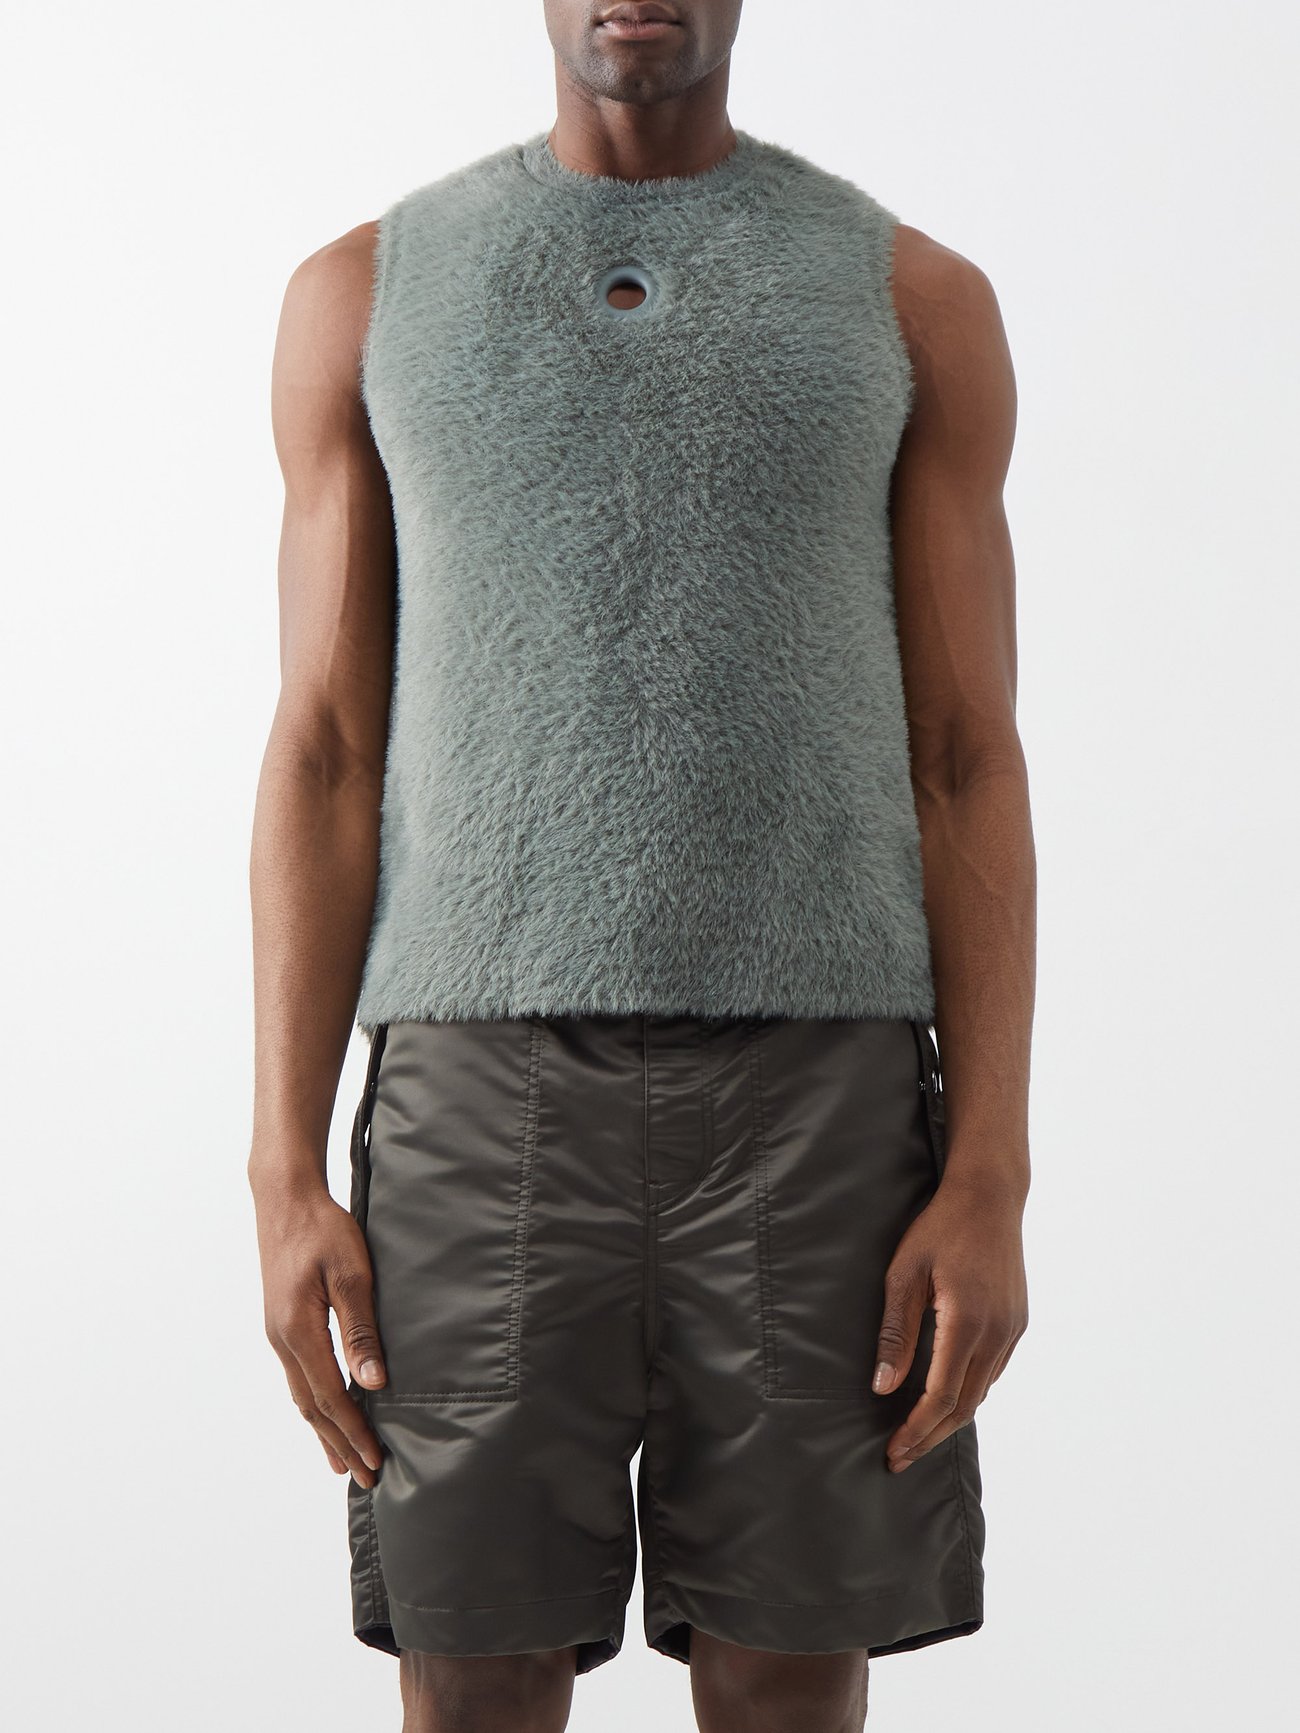 Eyelet-embellished brushed knitted sweater vest video